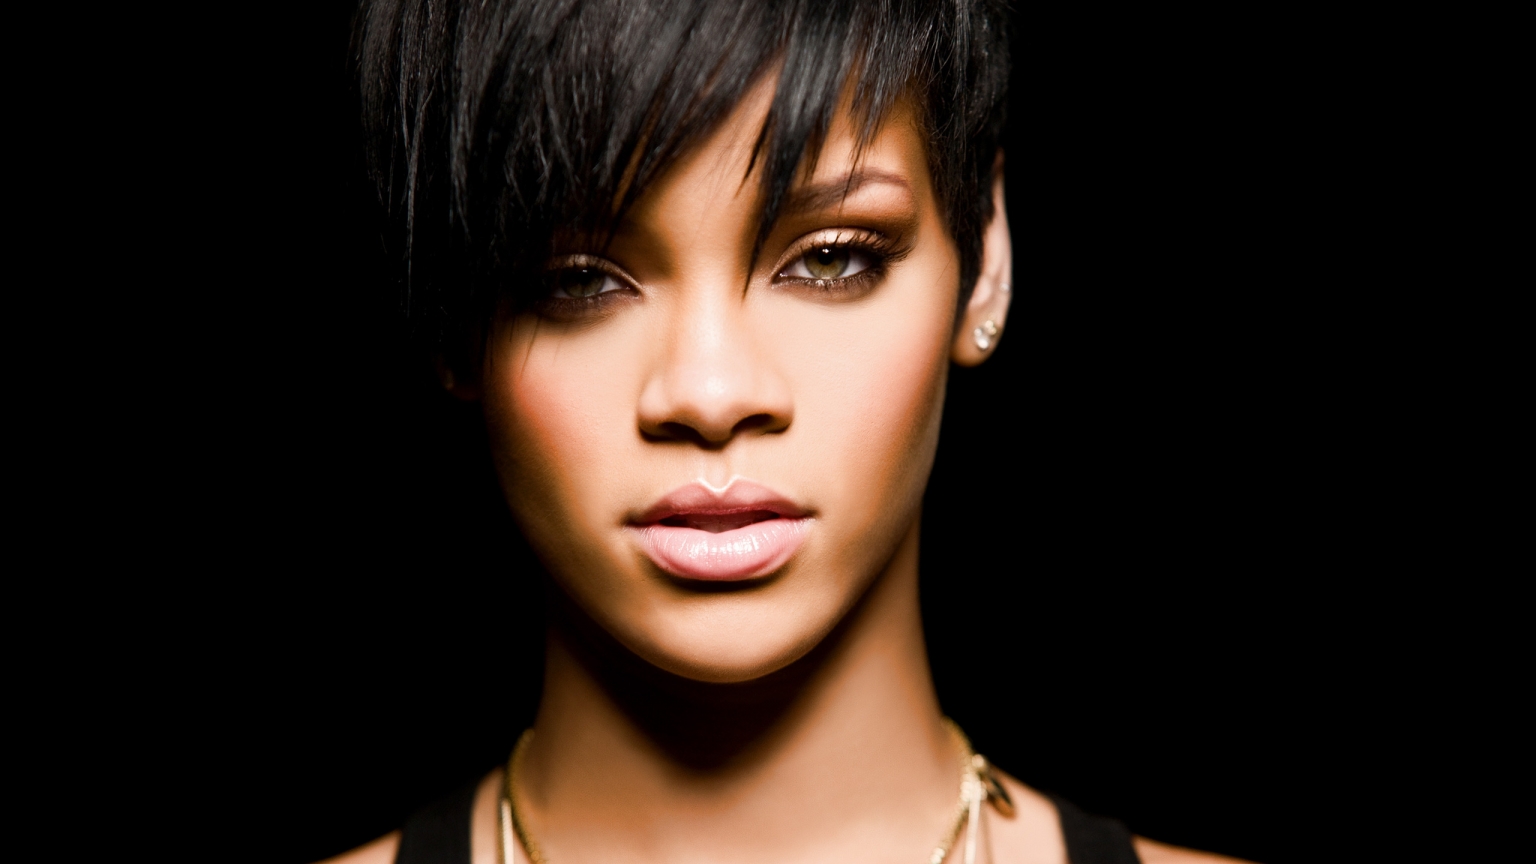 Rihanna for 1536 x 864 HDTV resolution